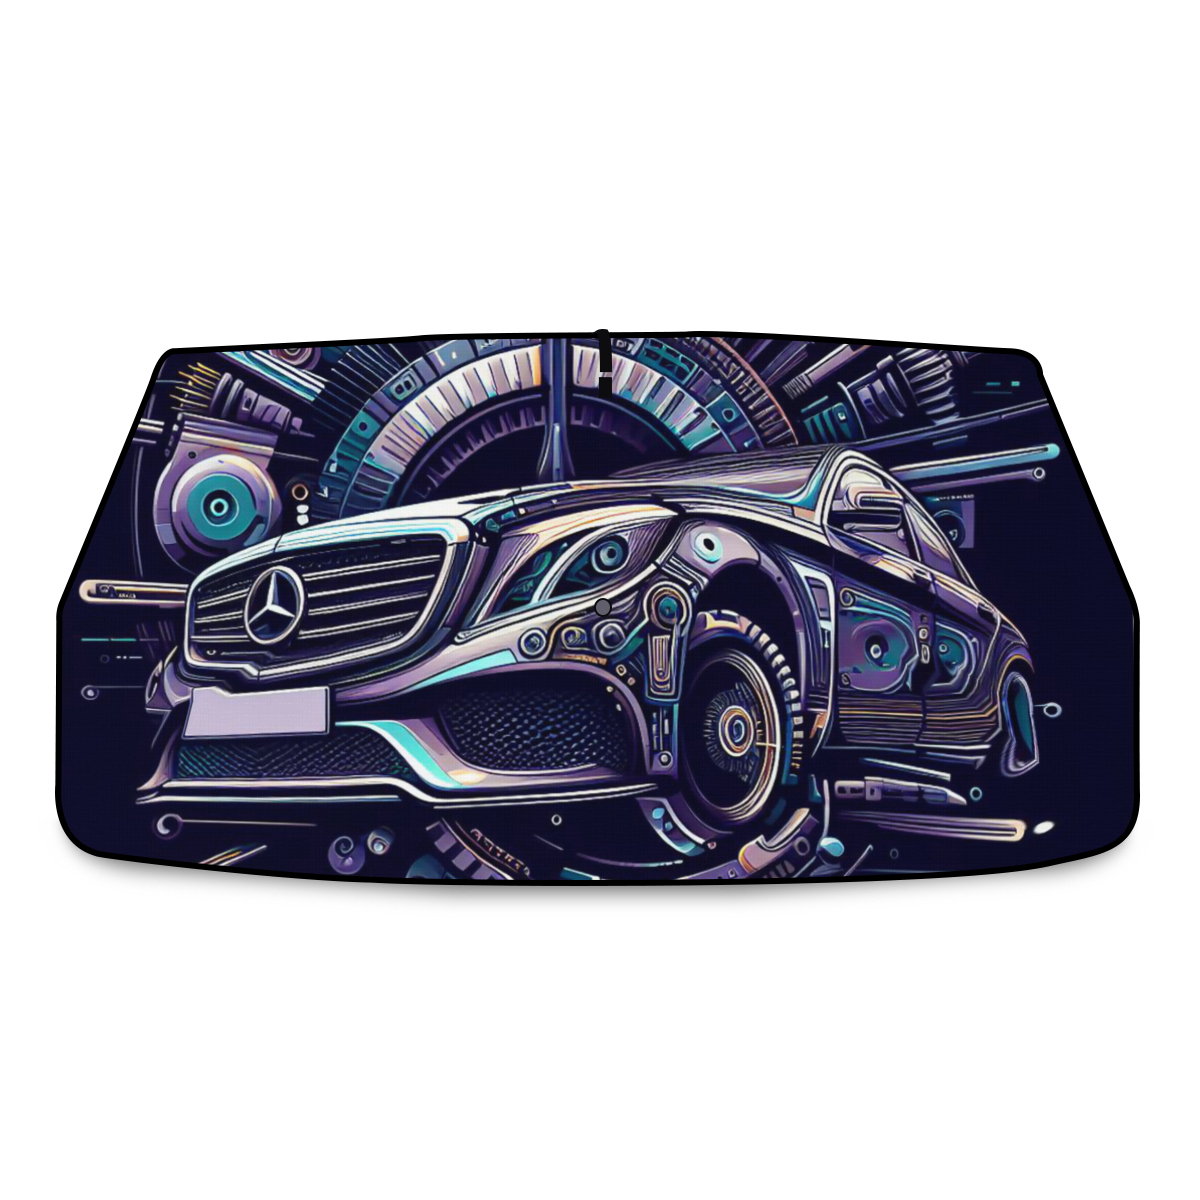 Pára-sol de Automóvel Resistente Mercedes-Design Exclusivo